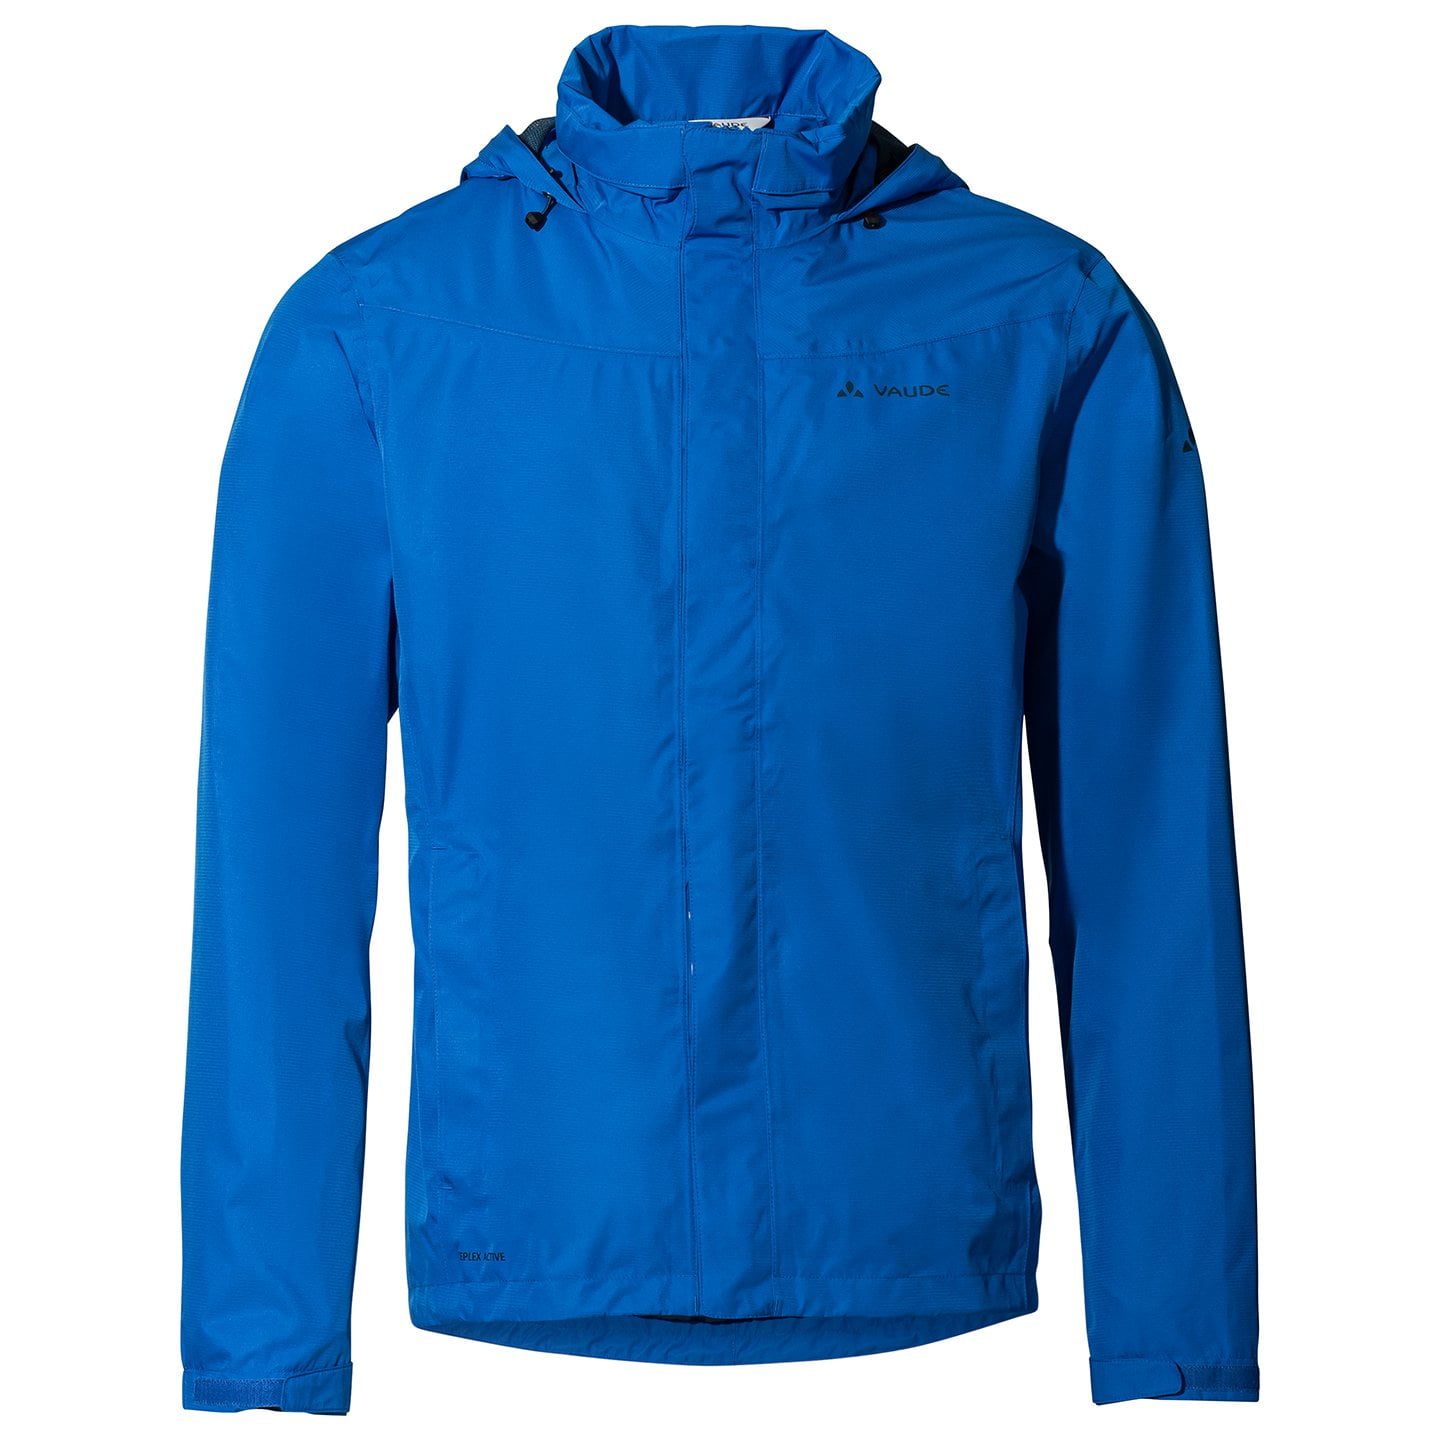 VAUDE Escape Light Waterproof Jacket, for men, size XL, Bike jacket, Rainwear